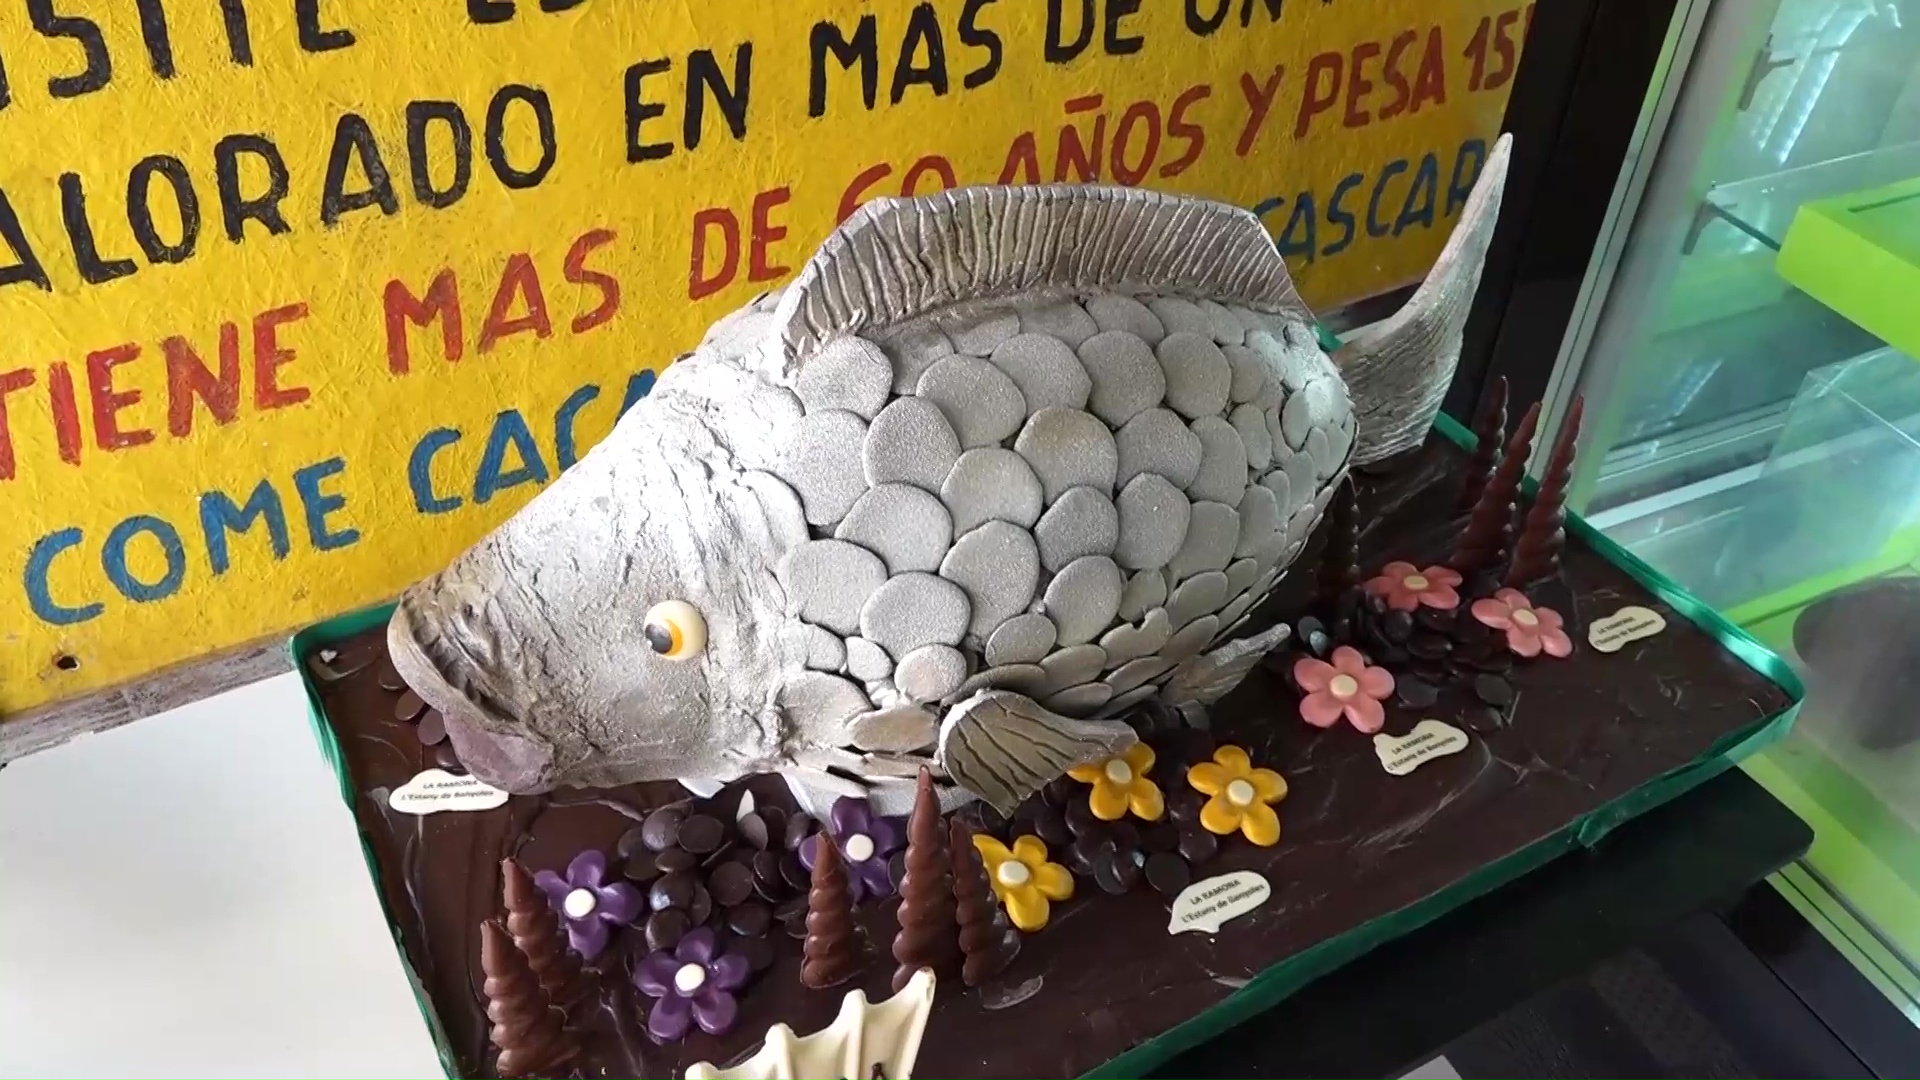 Palmes, palmons, mones, tortells, bunyols i un viatge a la cuina de Mèxic